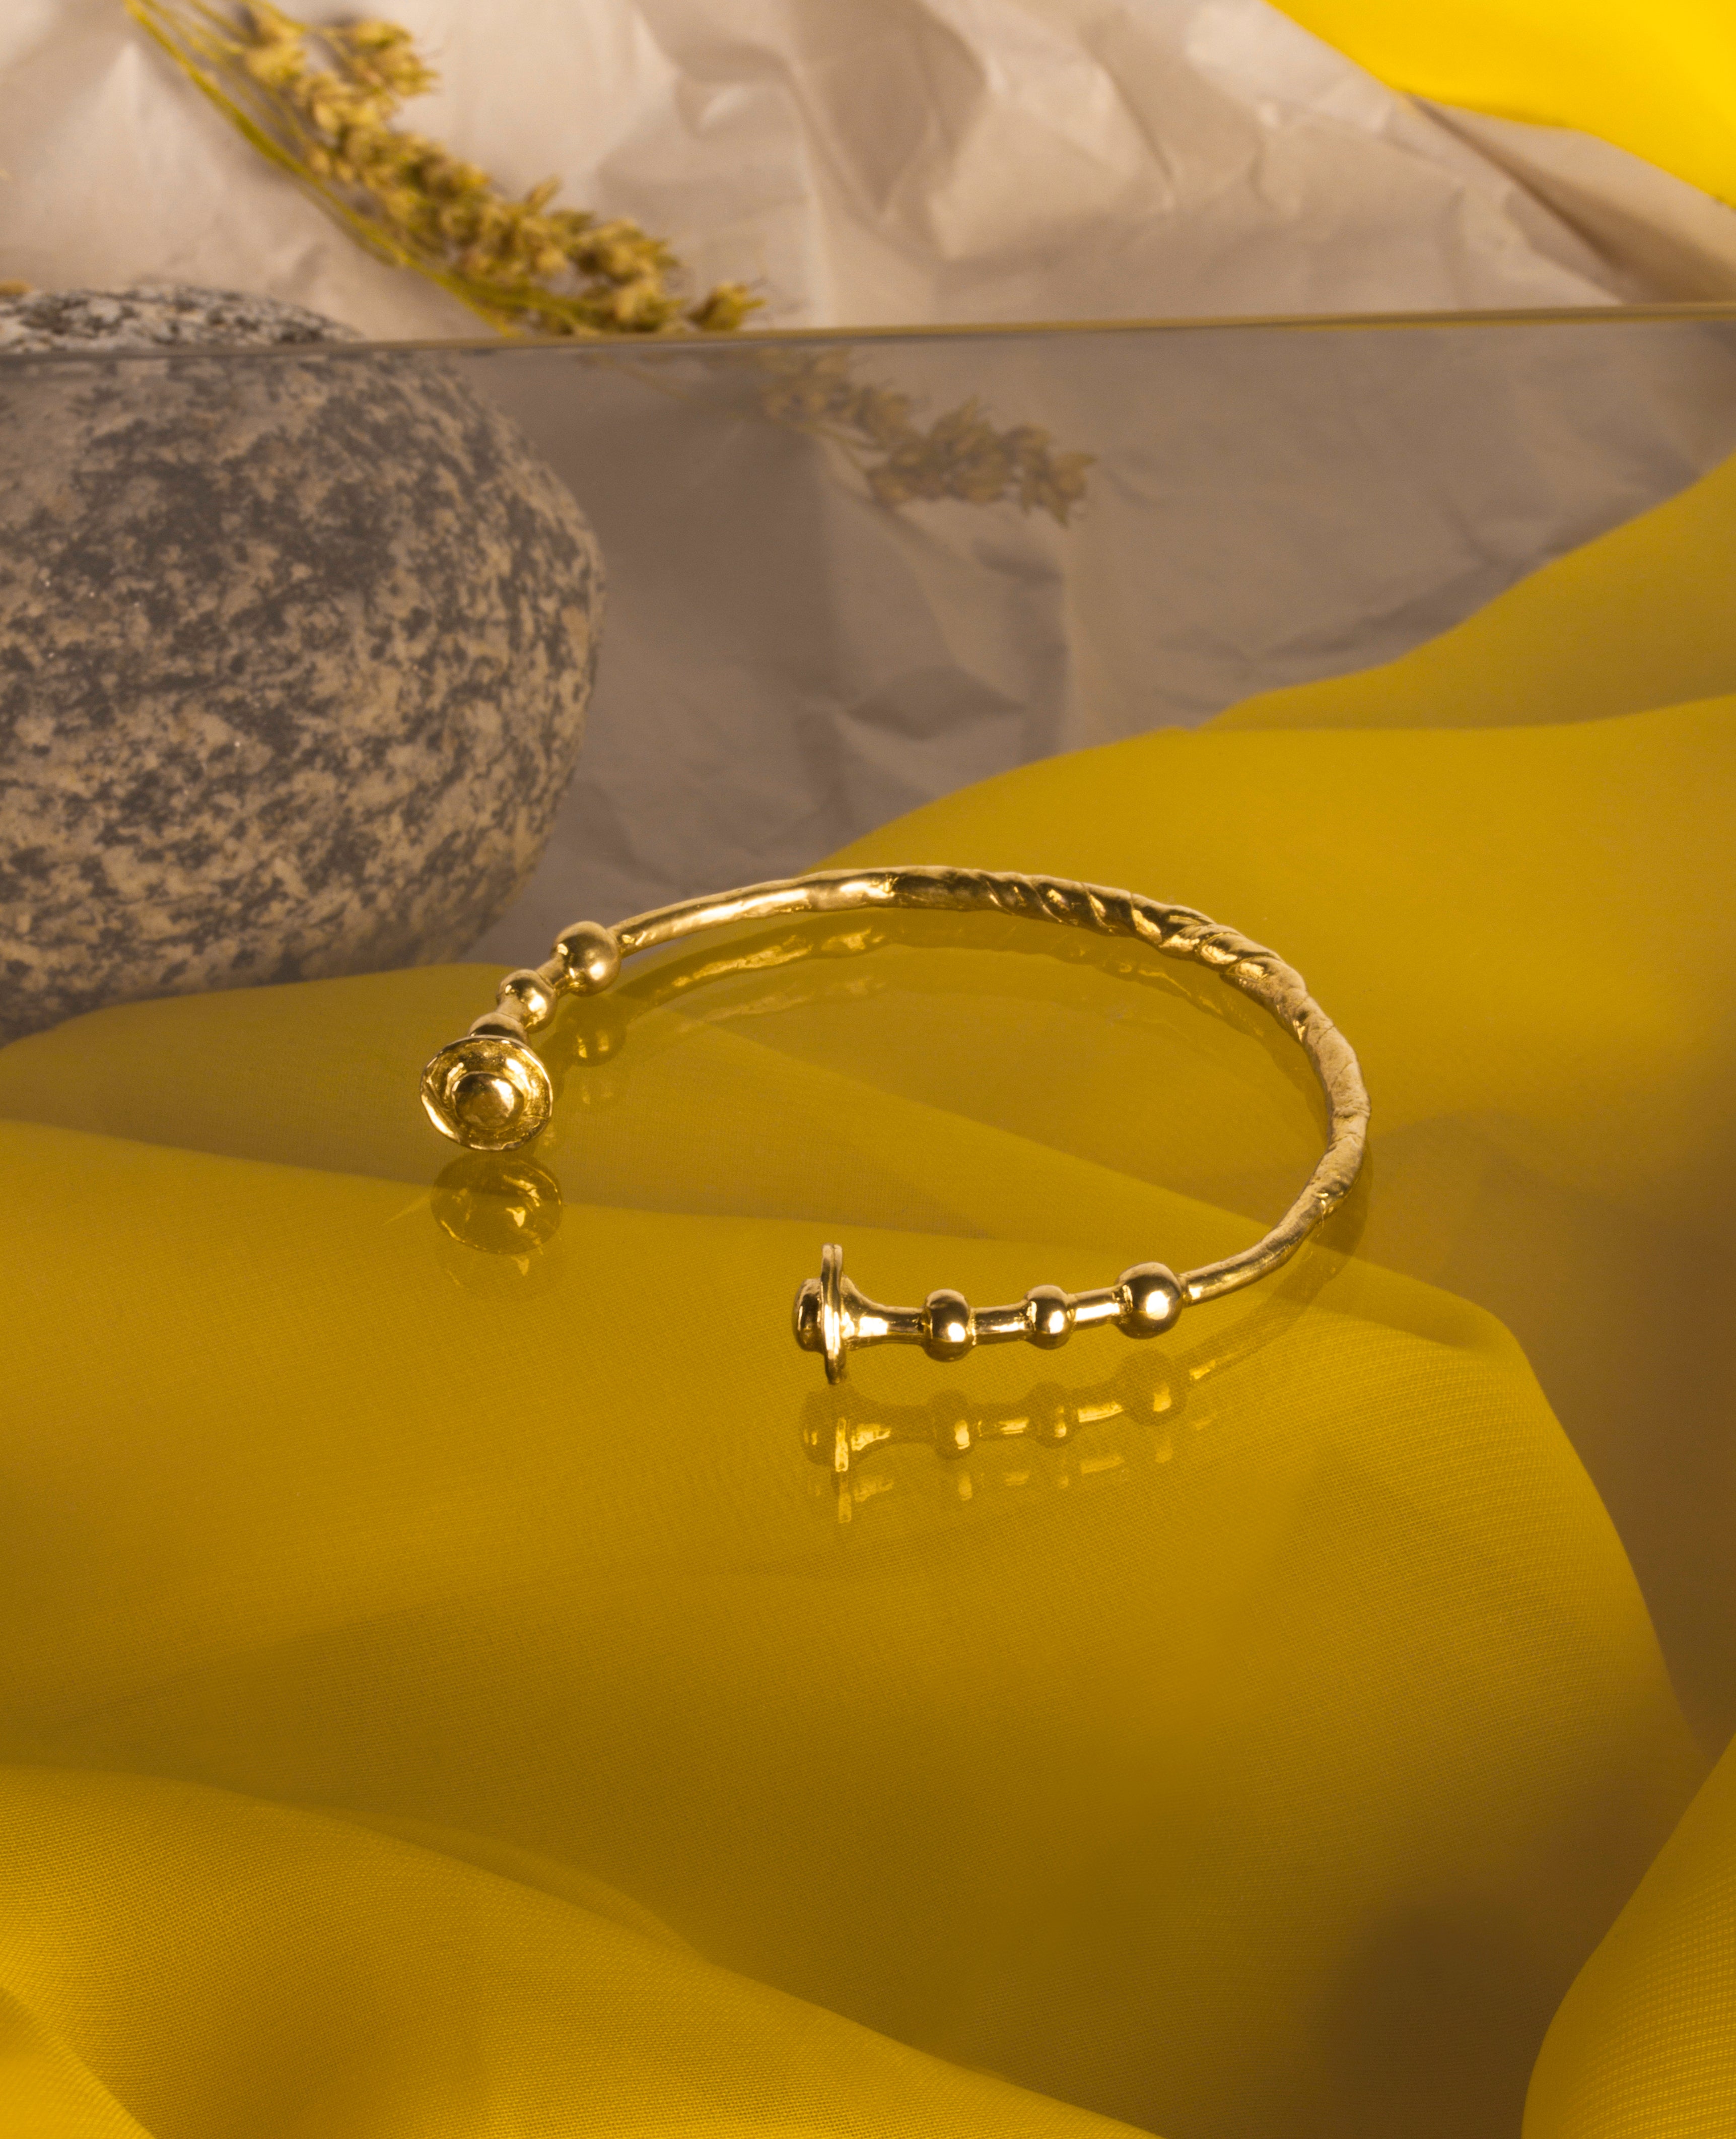 WREN // laiton - ORA-C jewelry - bijoux faits à la main par Caroline Pham, designer indépendante basée à Montréal